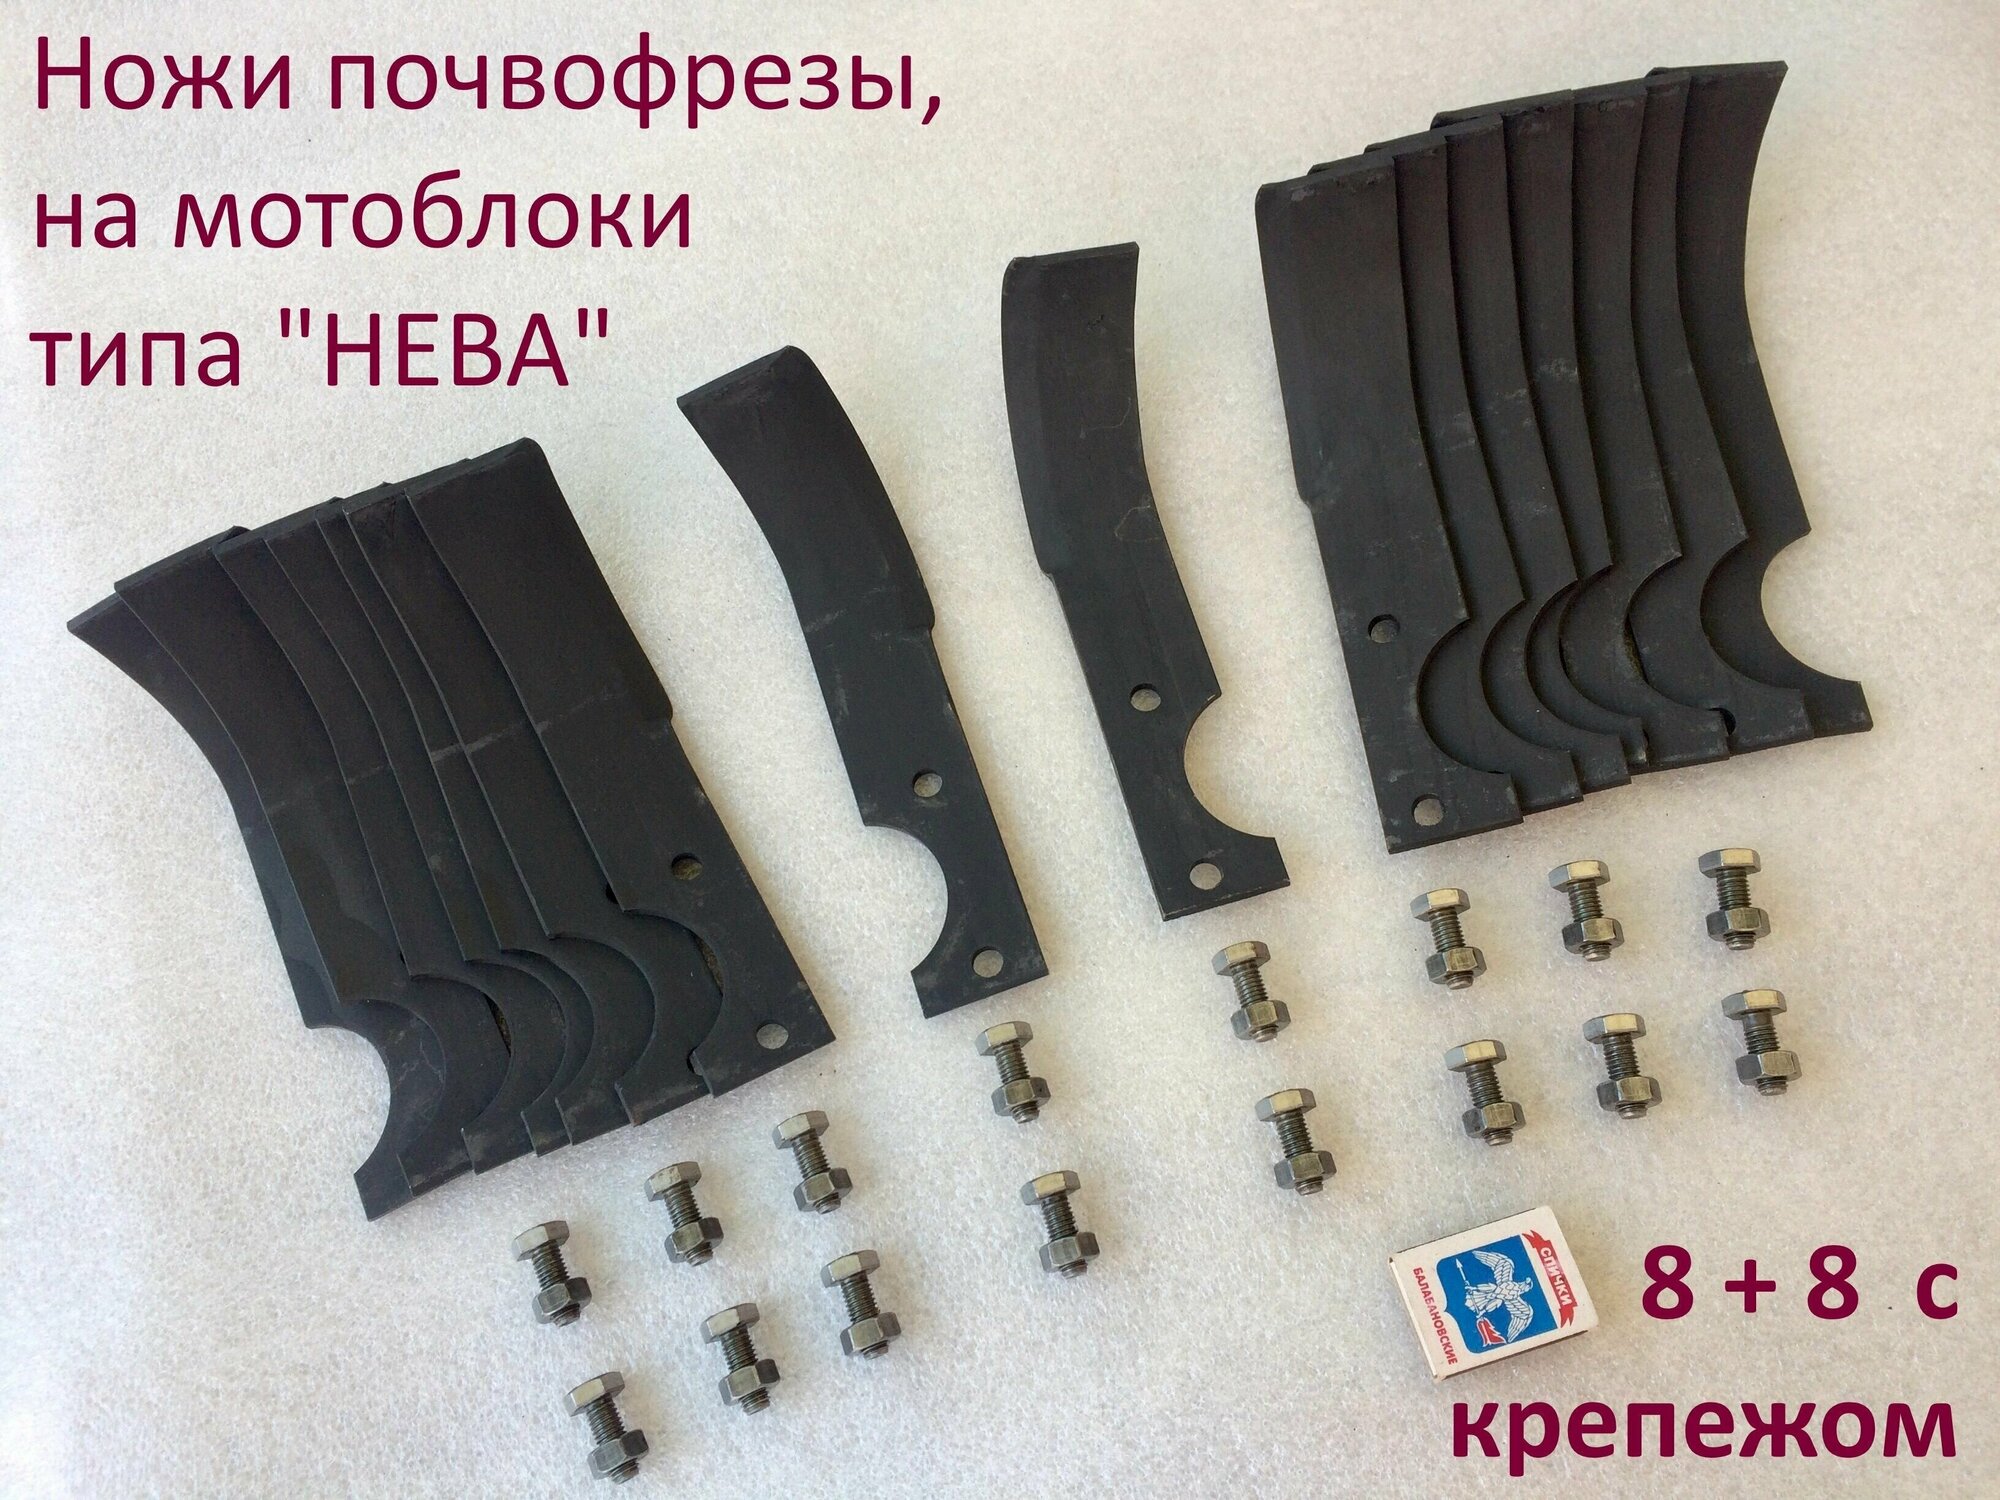 Комплект(16 штук) ножей почвофрезы с крепежом. Для мотоблоков нева ОКА Луч Каскад и подобных по креплению. Сделан в России.